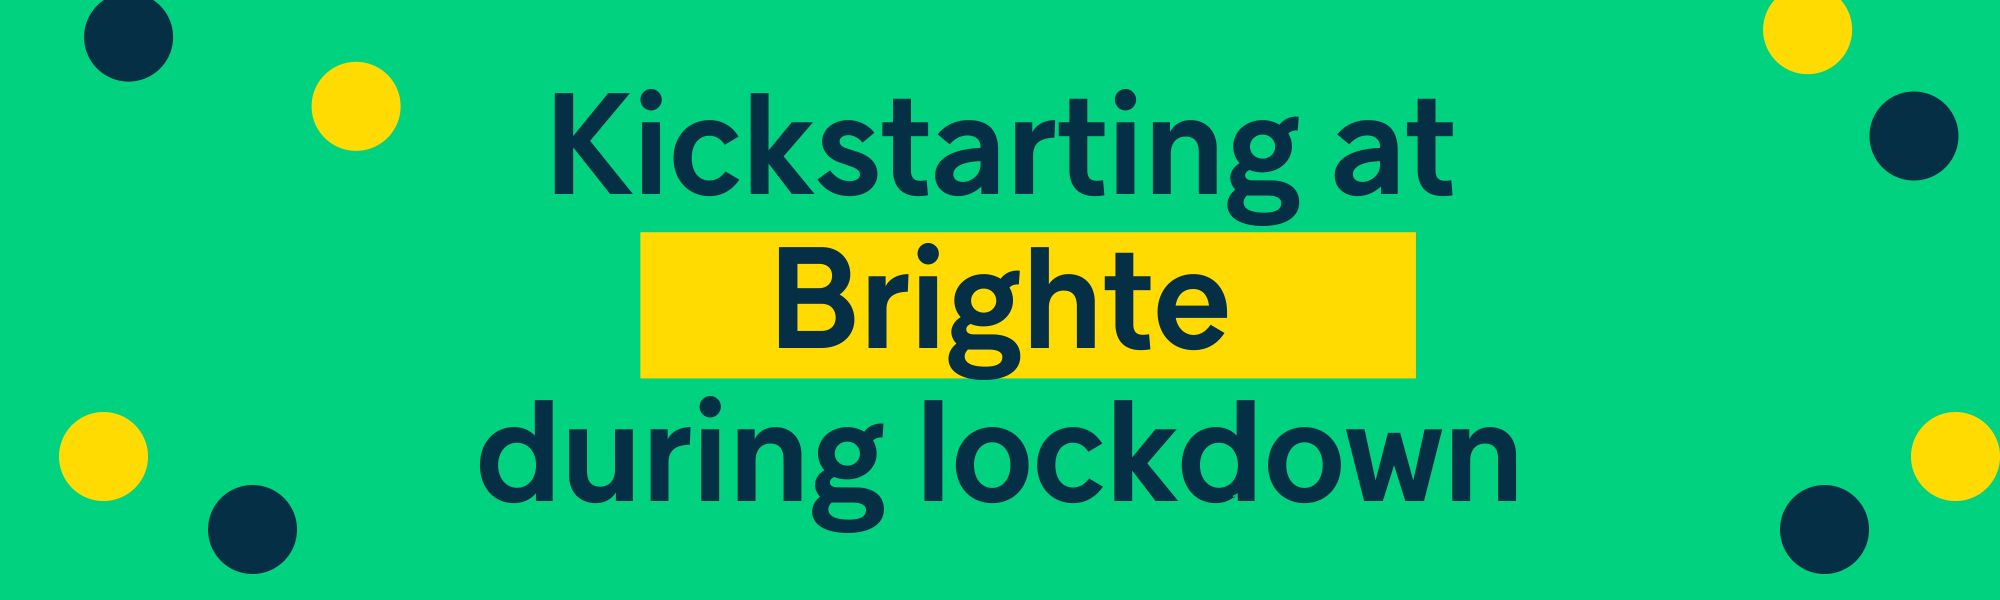 Kickstarting my new job at Brighte during lockdown